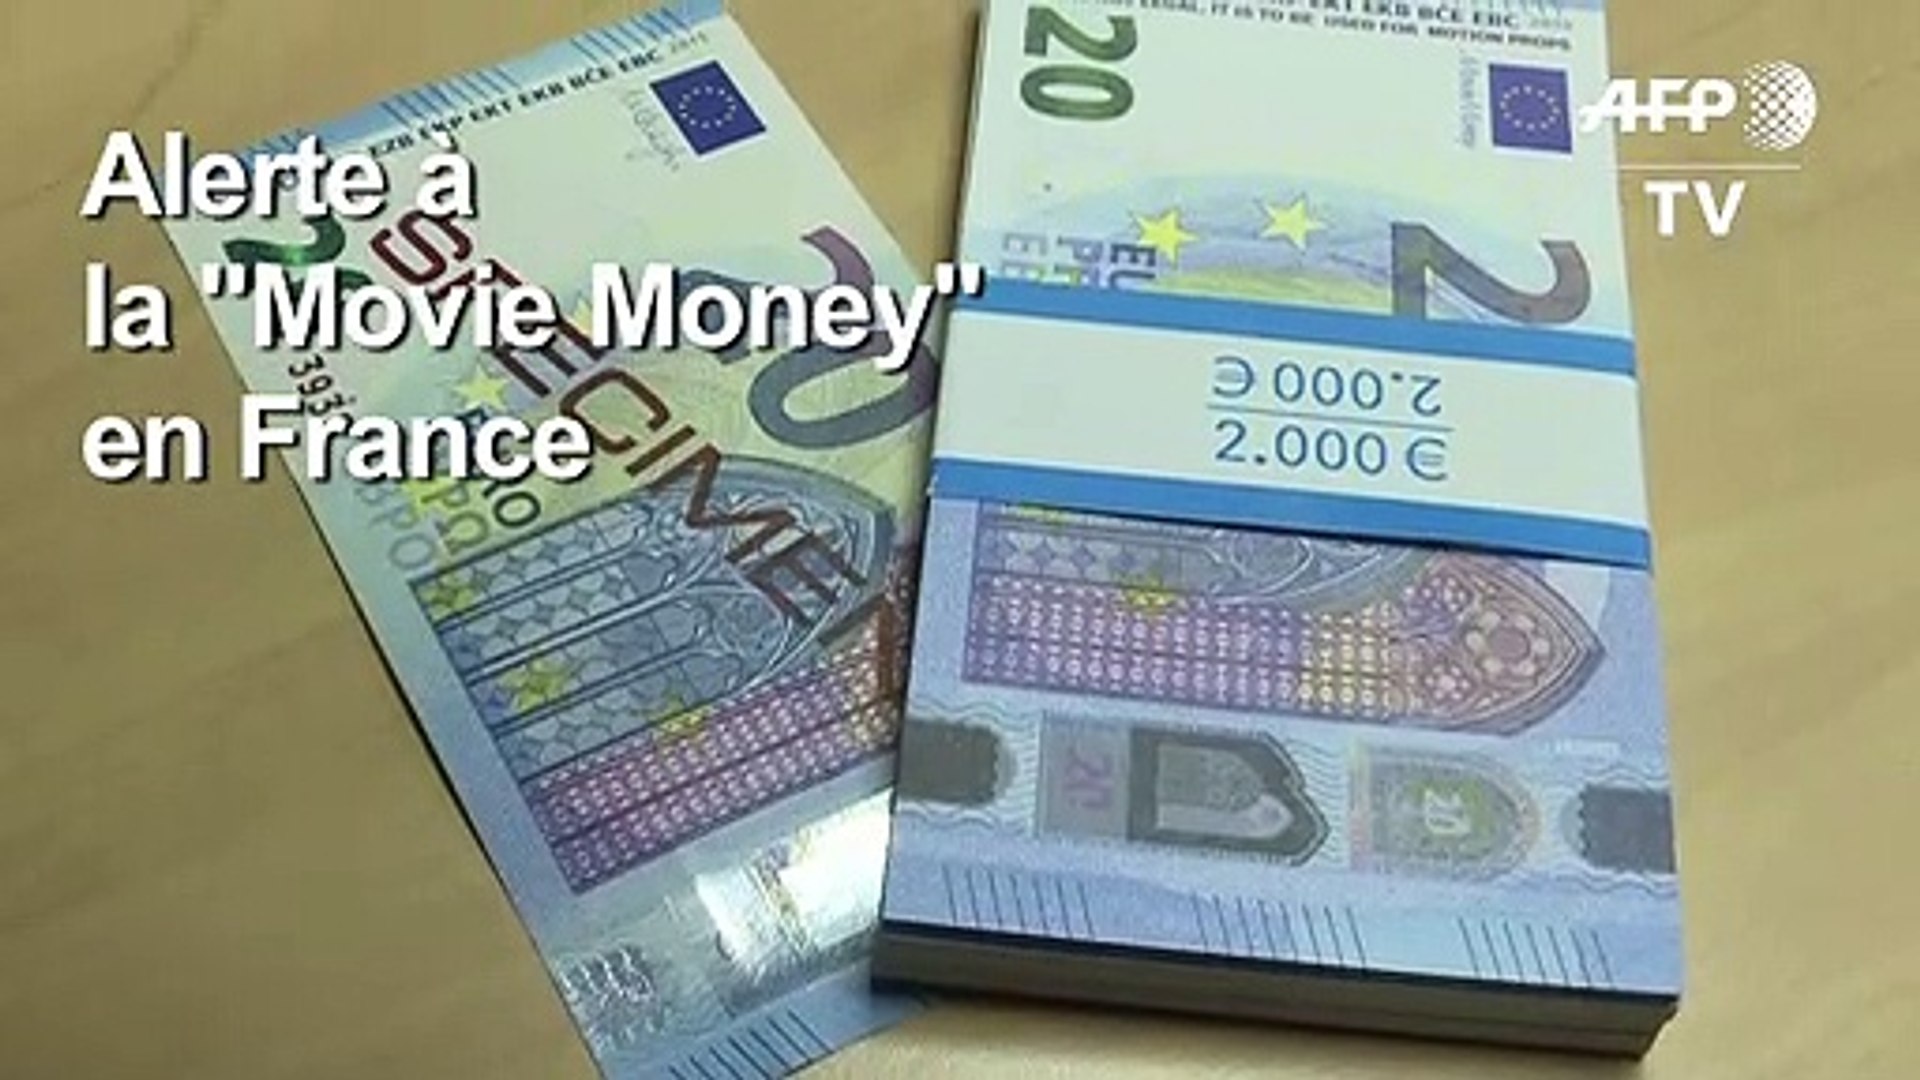 De faux billets de banque movie money retrouvés à Bordeaux